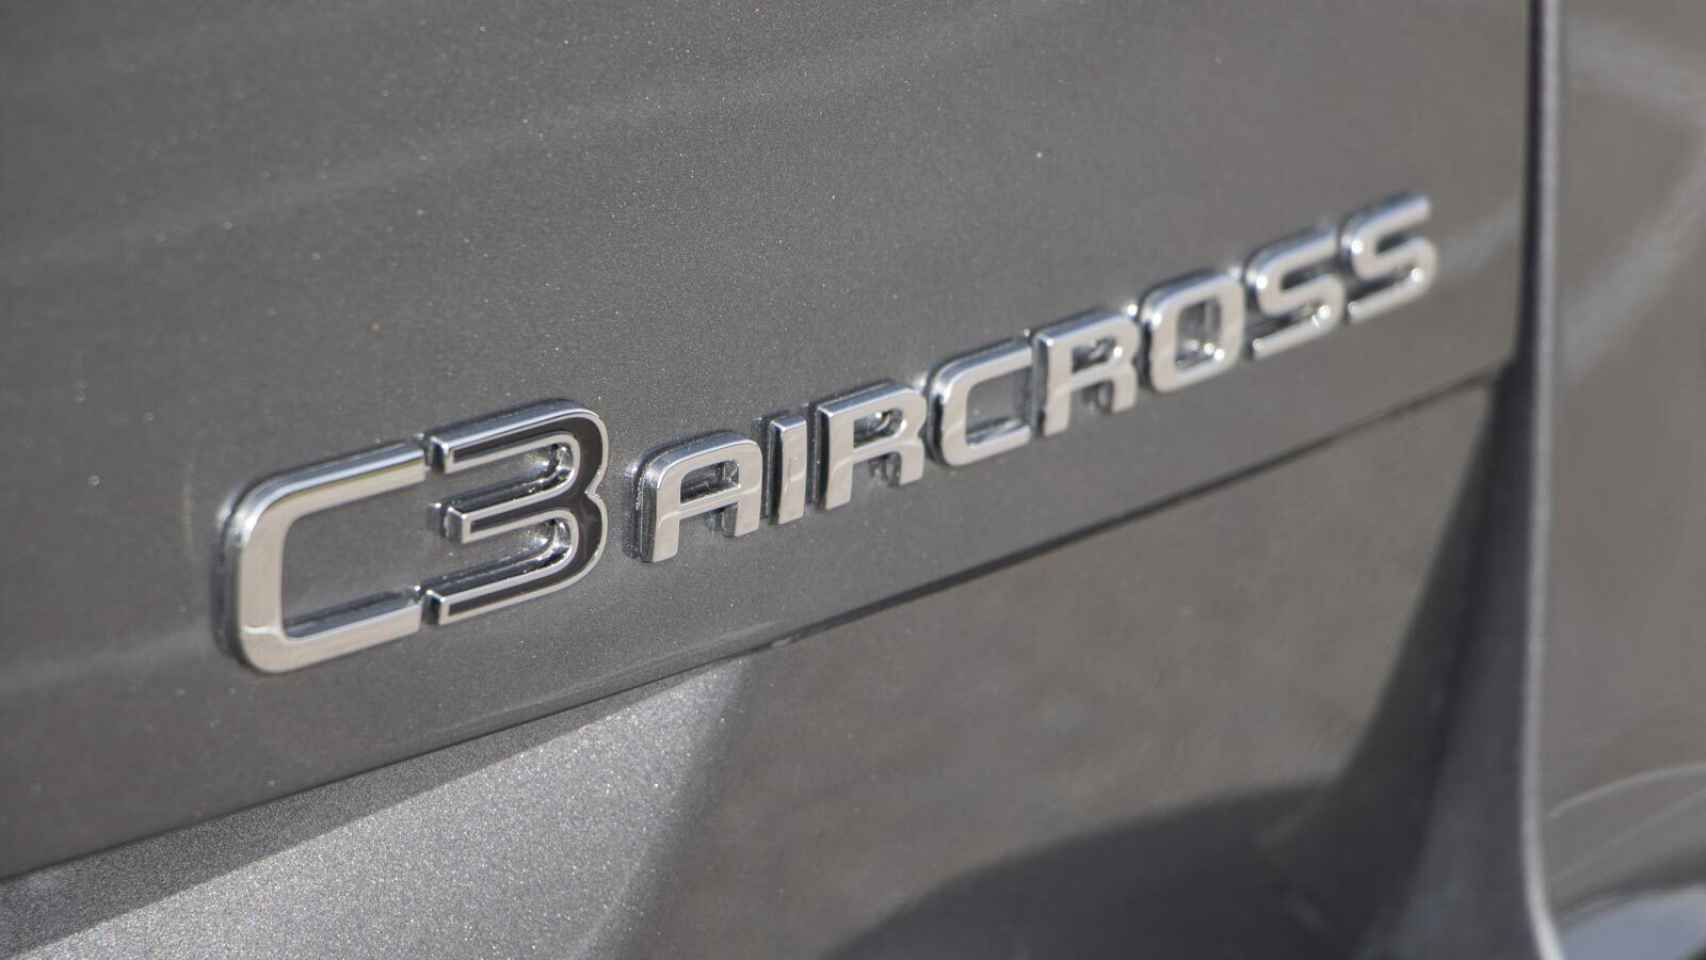 Citroën C3 Aircross 2021